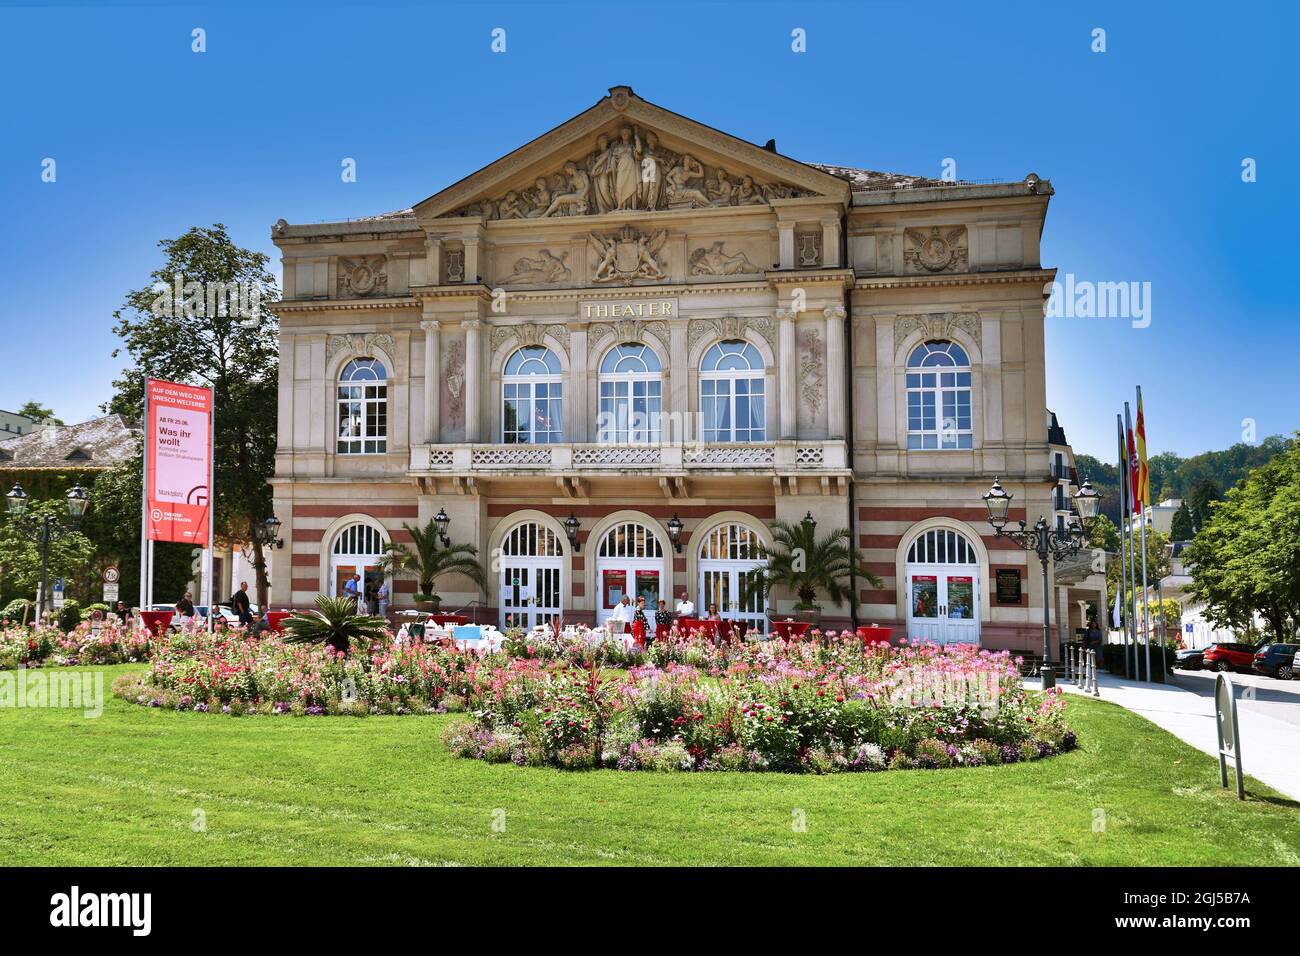 Baden-Baden, Allemagne - juillet 2021: Théâtre historique appelé 'Theatre Baden-Baden' à la place Goetheplatz Banque D'Images